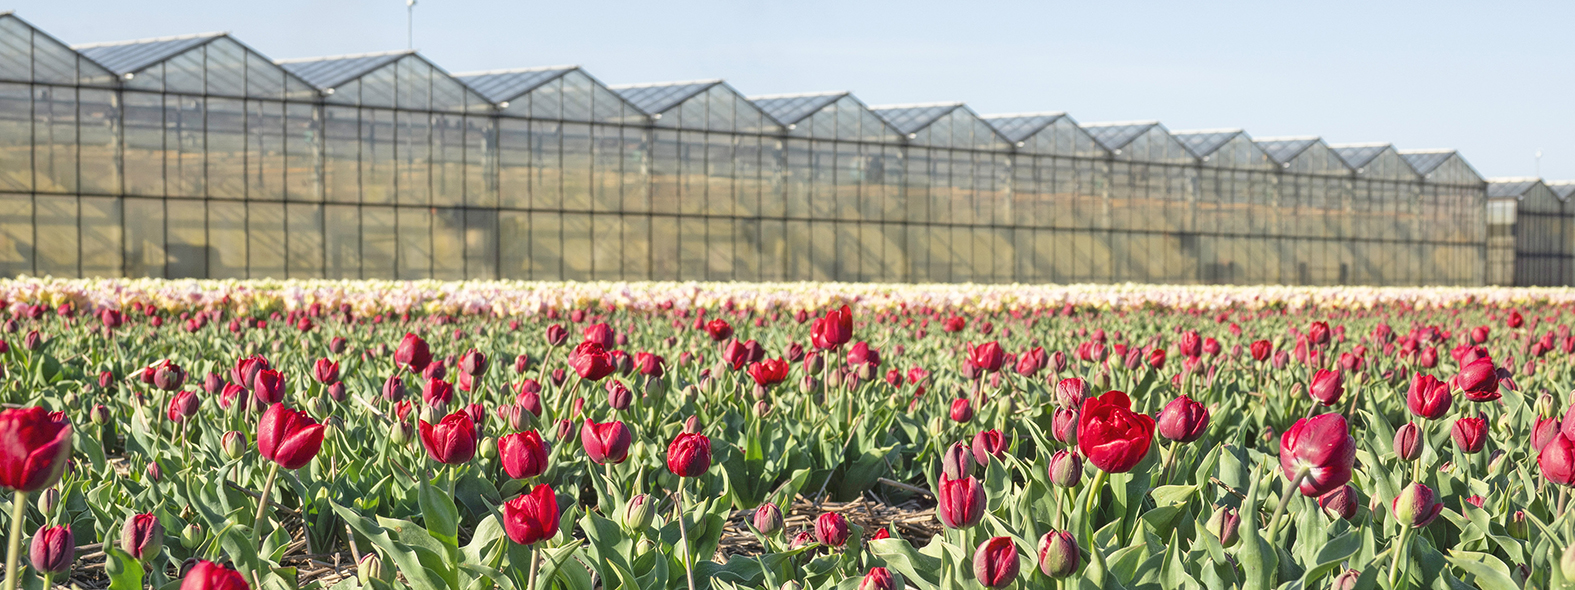 Een veld vol rode tulpen, een prachtig zicht op de natuur in volle bloei. Op de achtergrond een glazen kas.